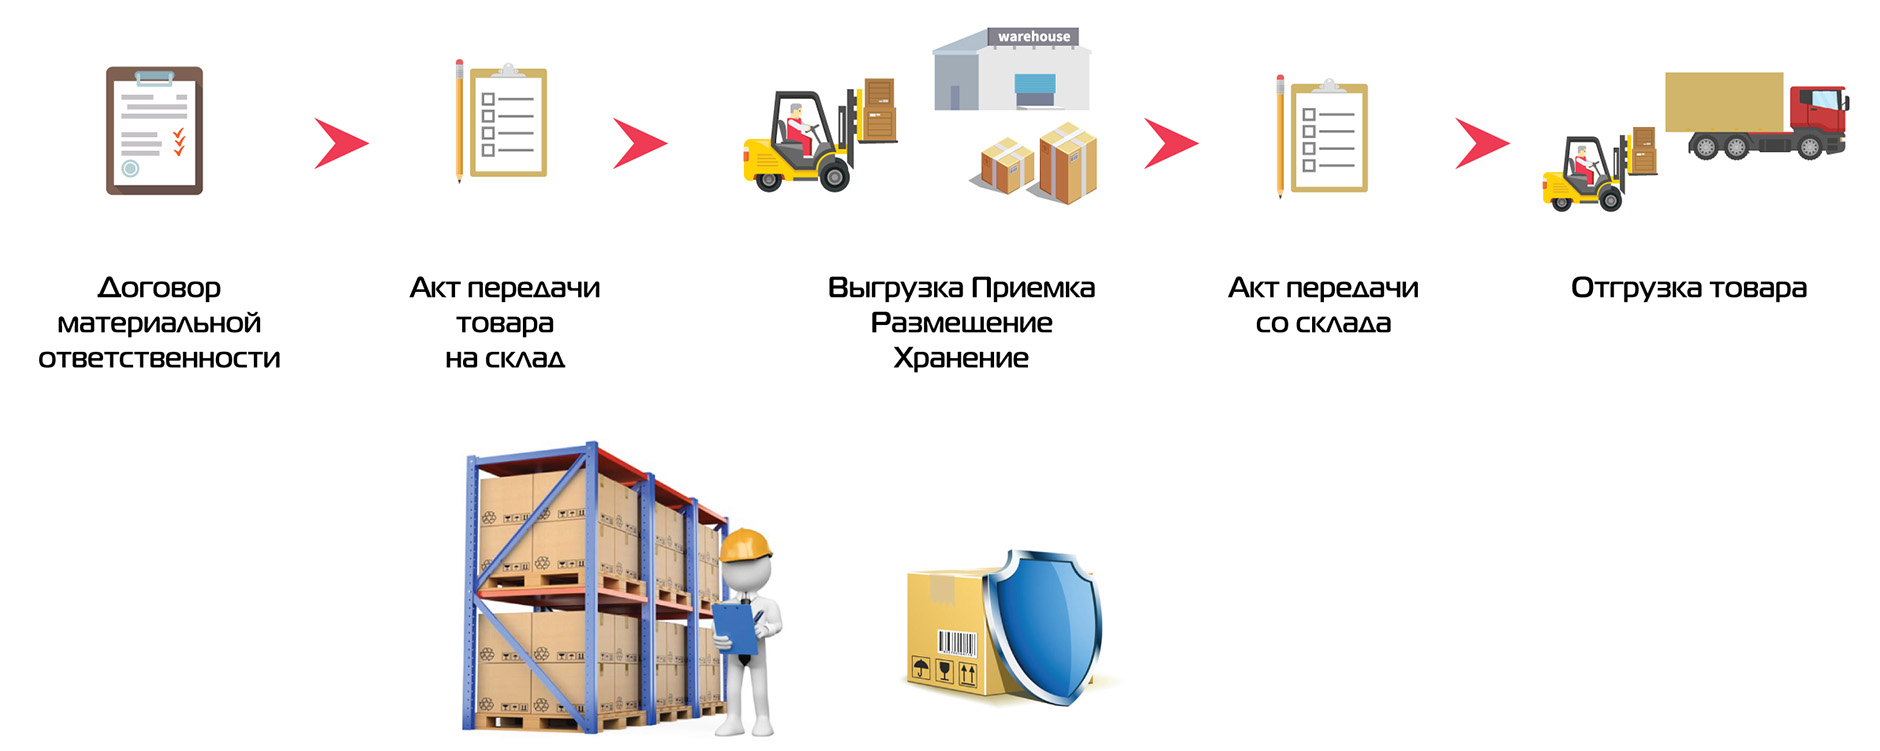 Модель работы склада ответственного хранения в Киеве